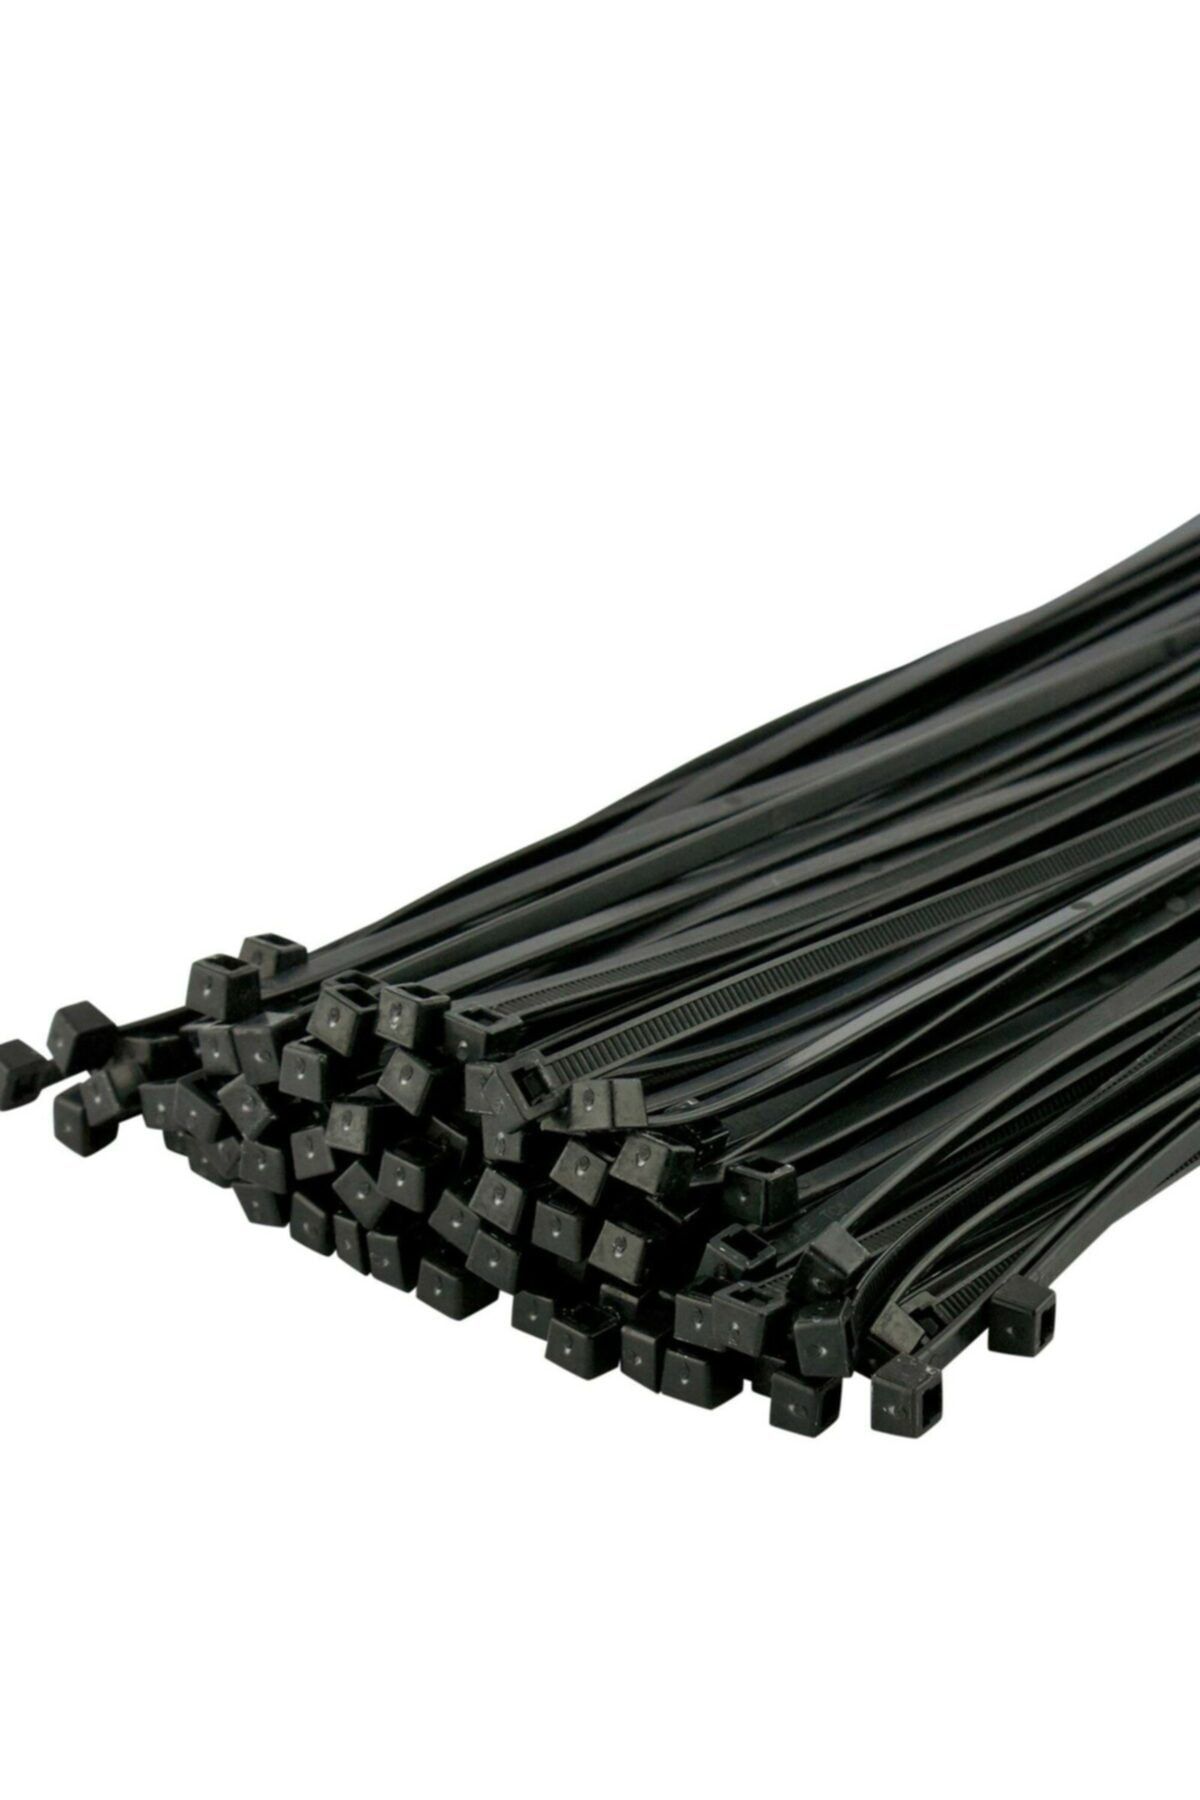 Çetsan Çet-san 3,6*150 Kablo Bağı Siyah Renk Çeşidi=(100 Adet)